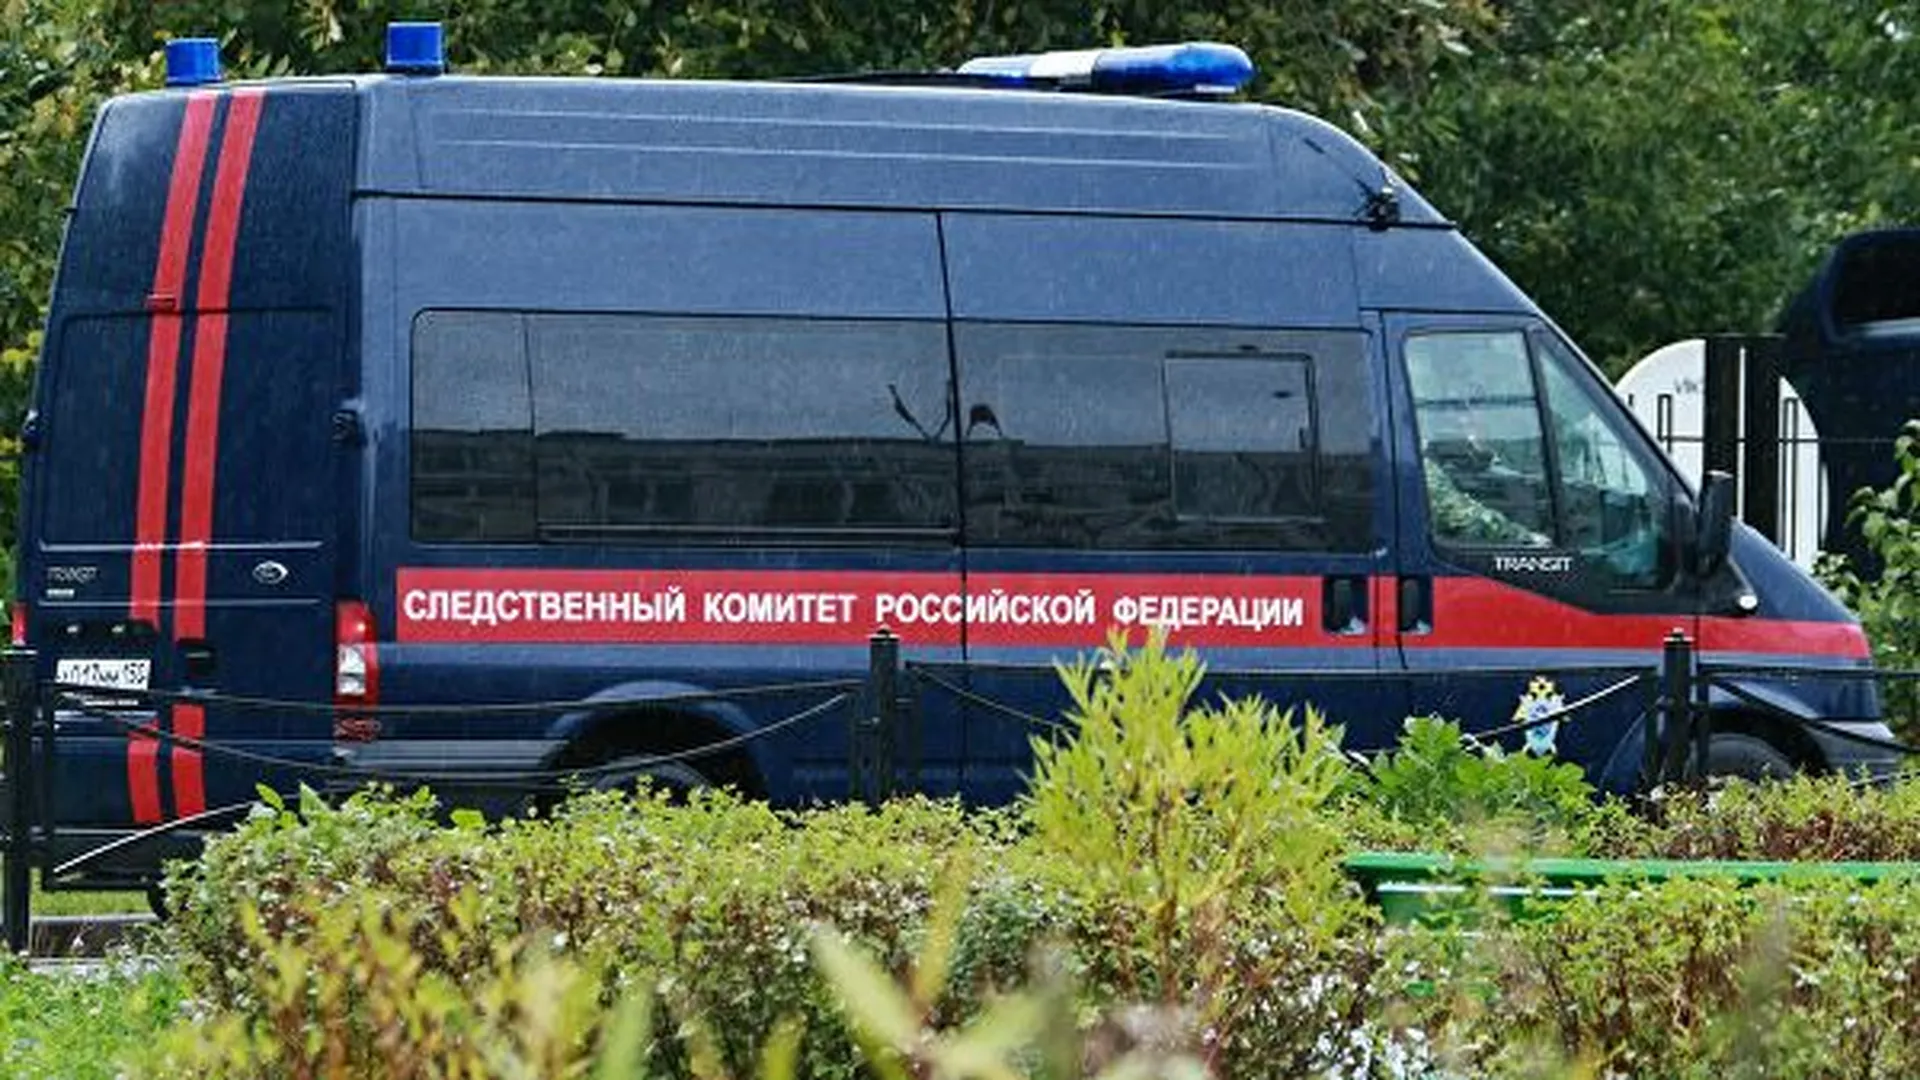 СК: стрелявший на юго-западе Москвы умер